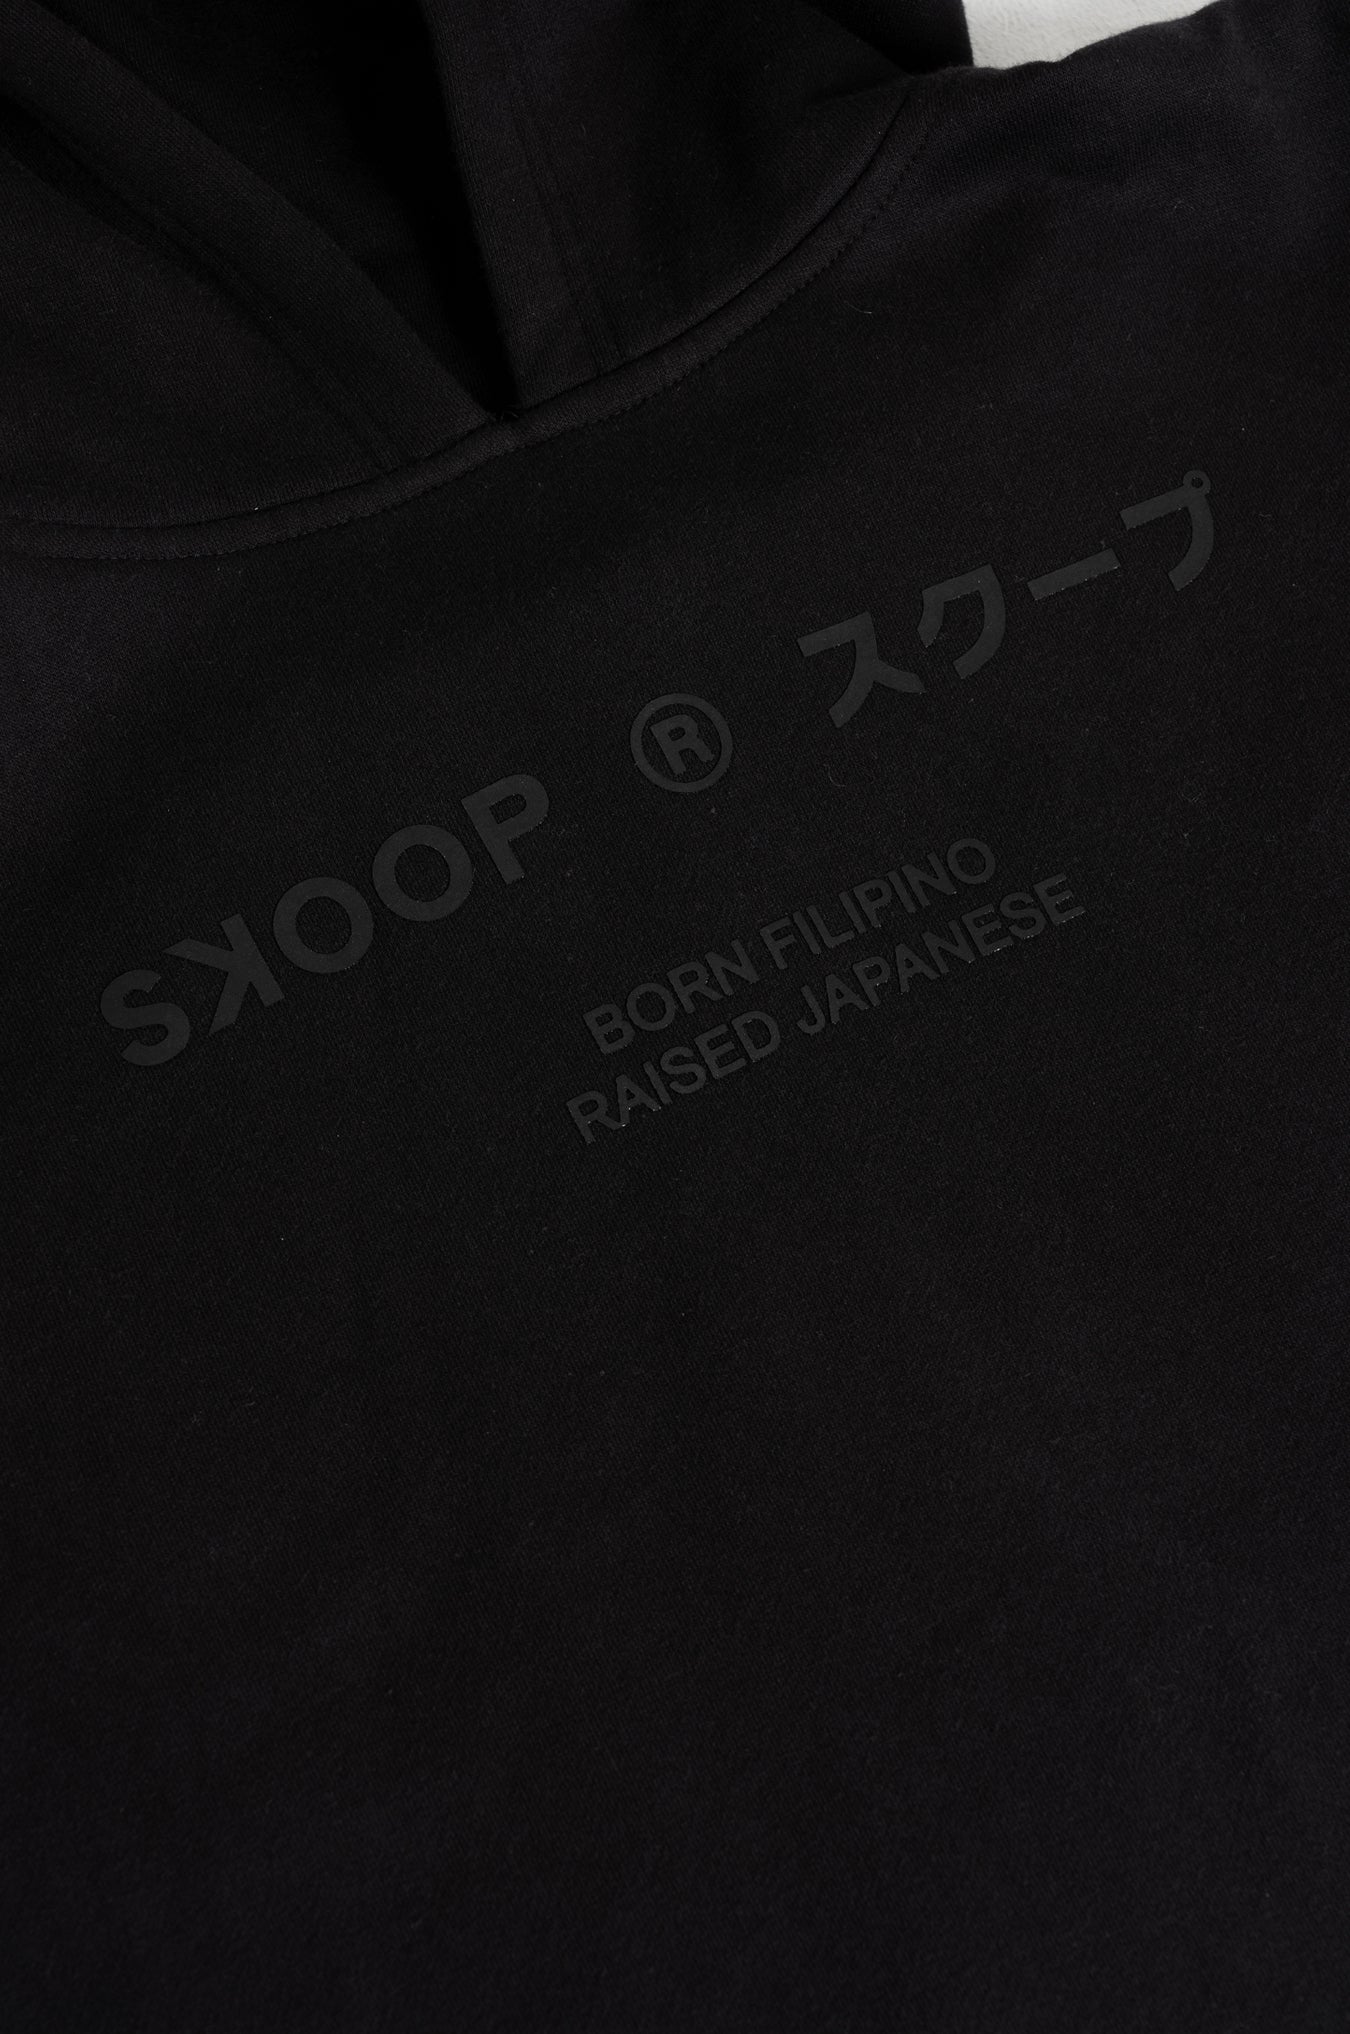 SKOOP® Nero Evergreen Hoodie Onyx - SKOOP Kommunity